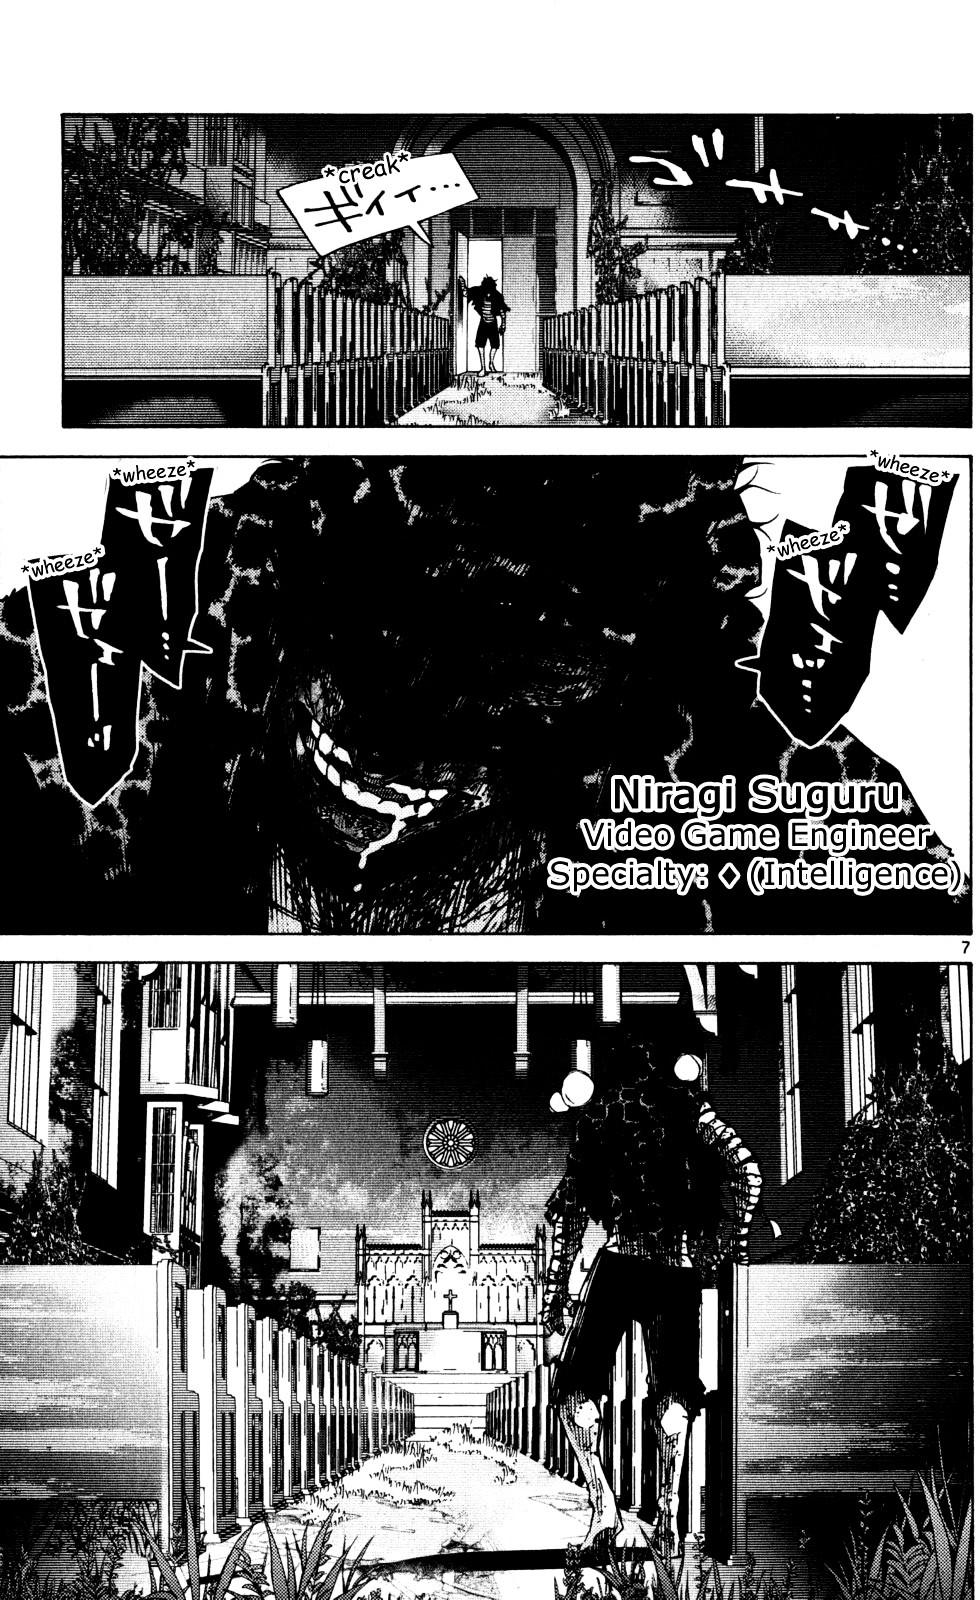 Imawa No Kuni No Alice Vol.16 Chapter 54 : Seventh Day Of Exhibitions (2) page 7 - Mangakakalot